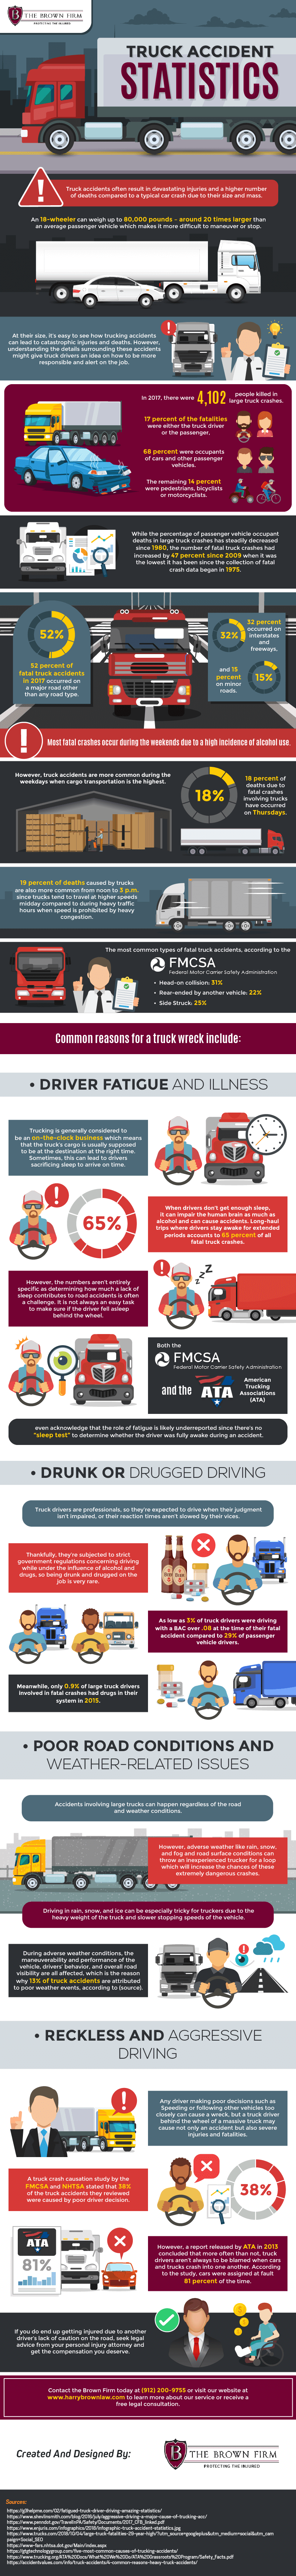 Truck Accident Statistics